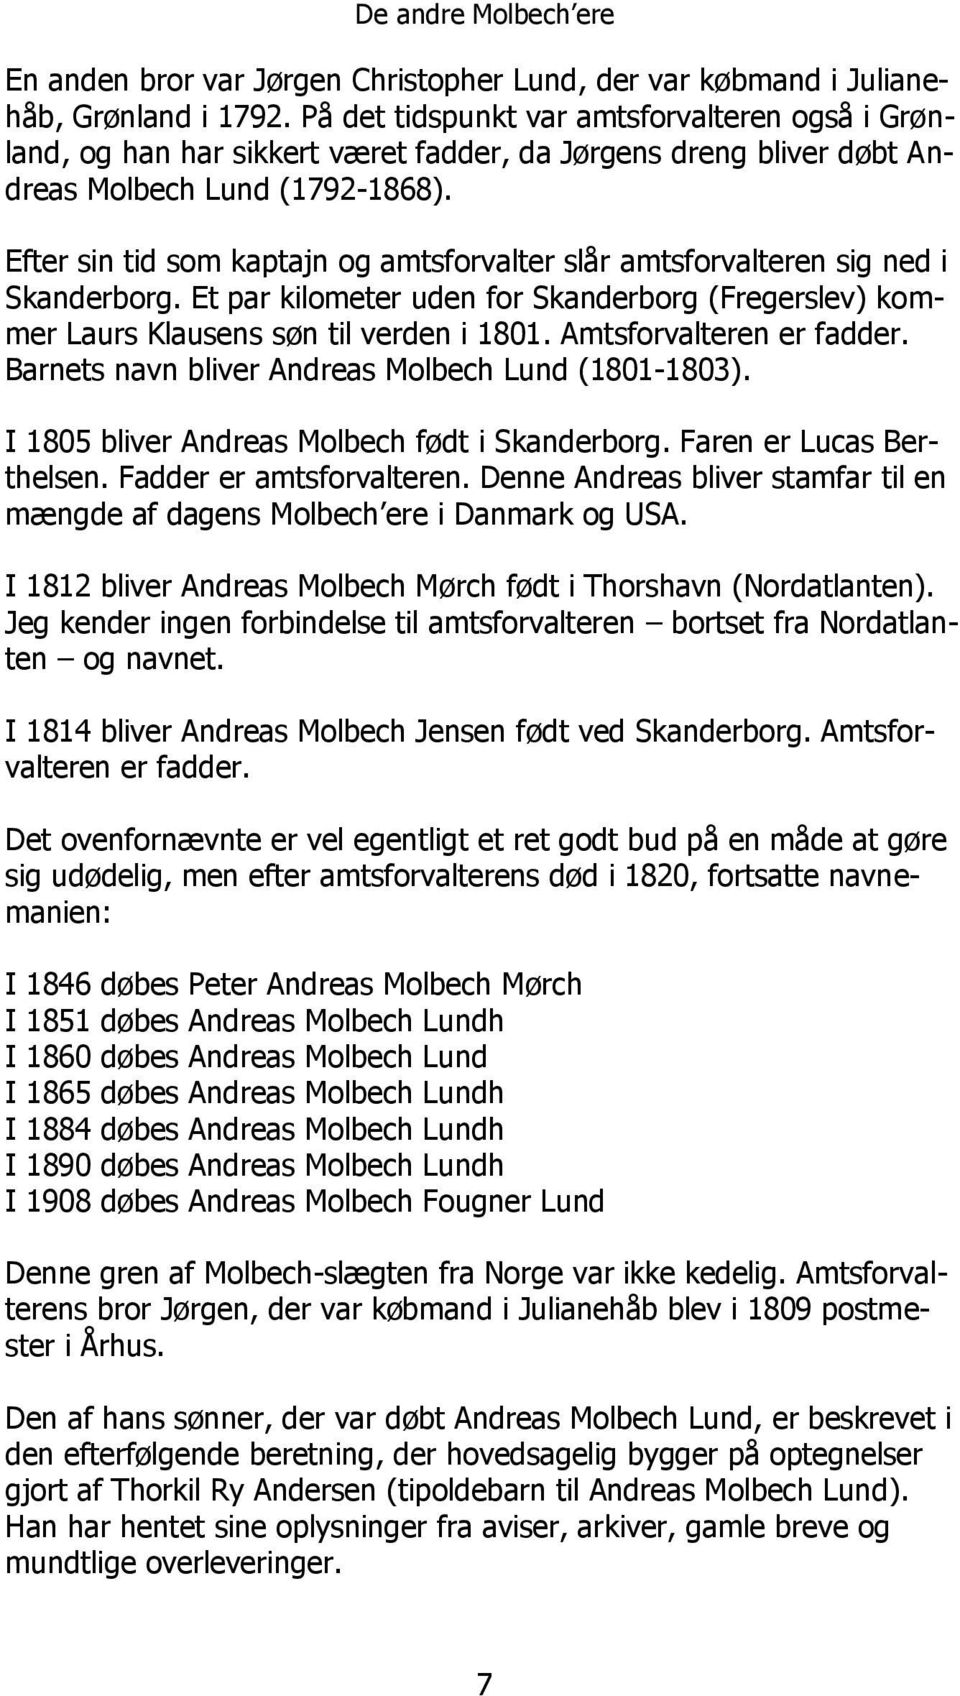 Efter sin tid som kaptajn og amtsforvalter slår amtsforvalteren sig ned i Skanderborg. Et par kilometer uden for Skanderborg (Fregerslev) kommer Laurs Klausens søn til verden i 1801.